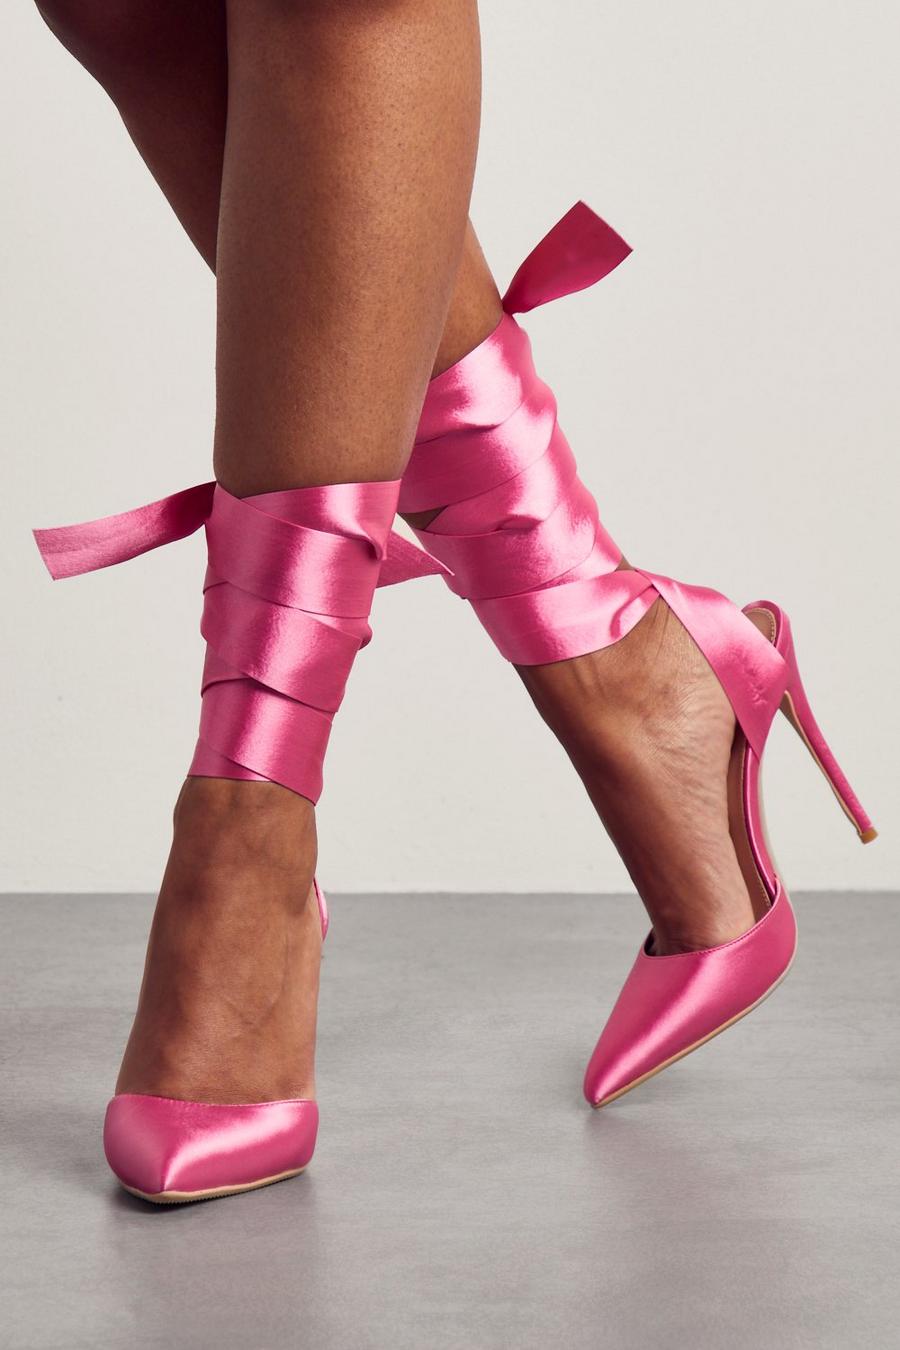 Hot pink Satin Tie Up High Heels